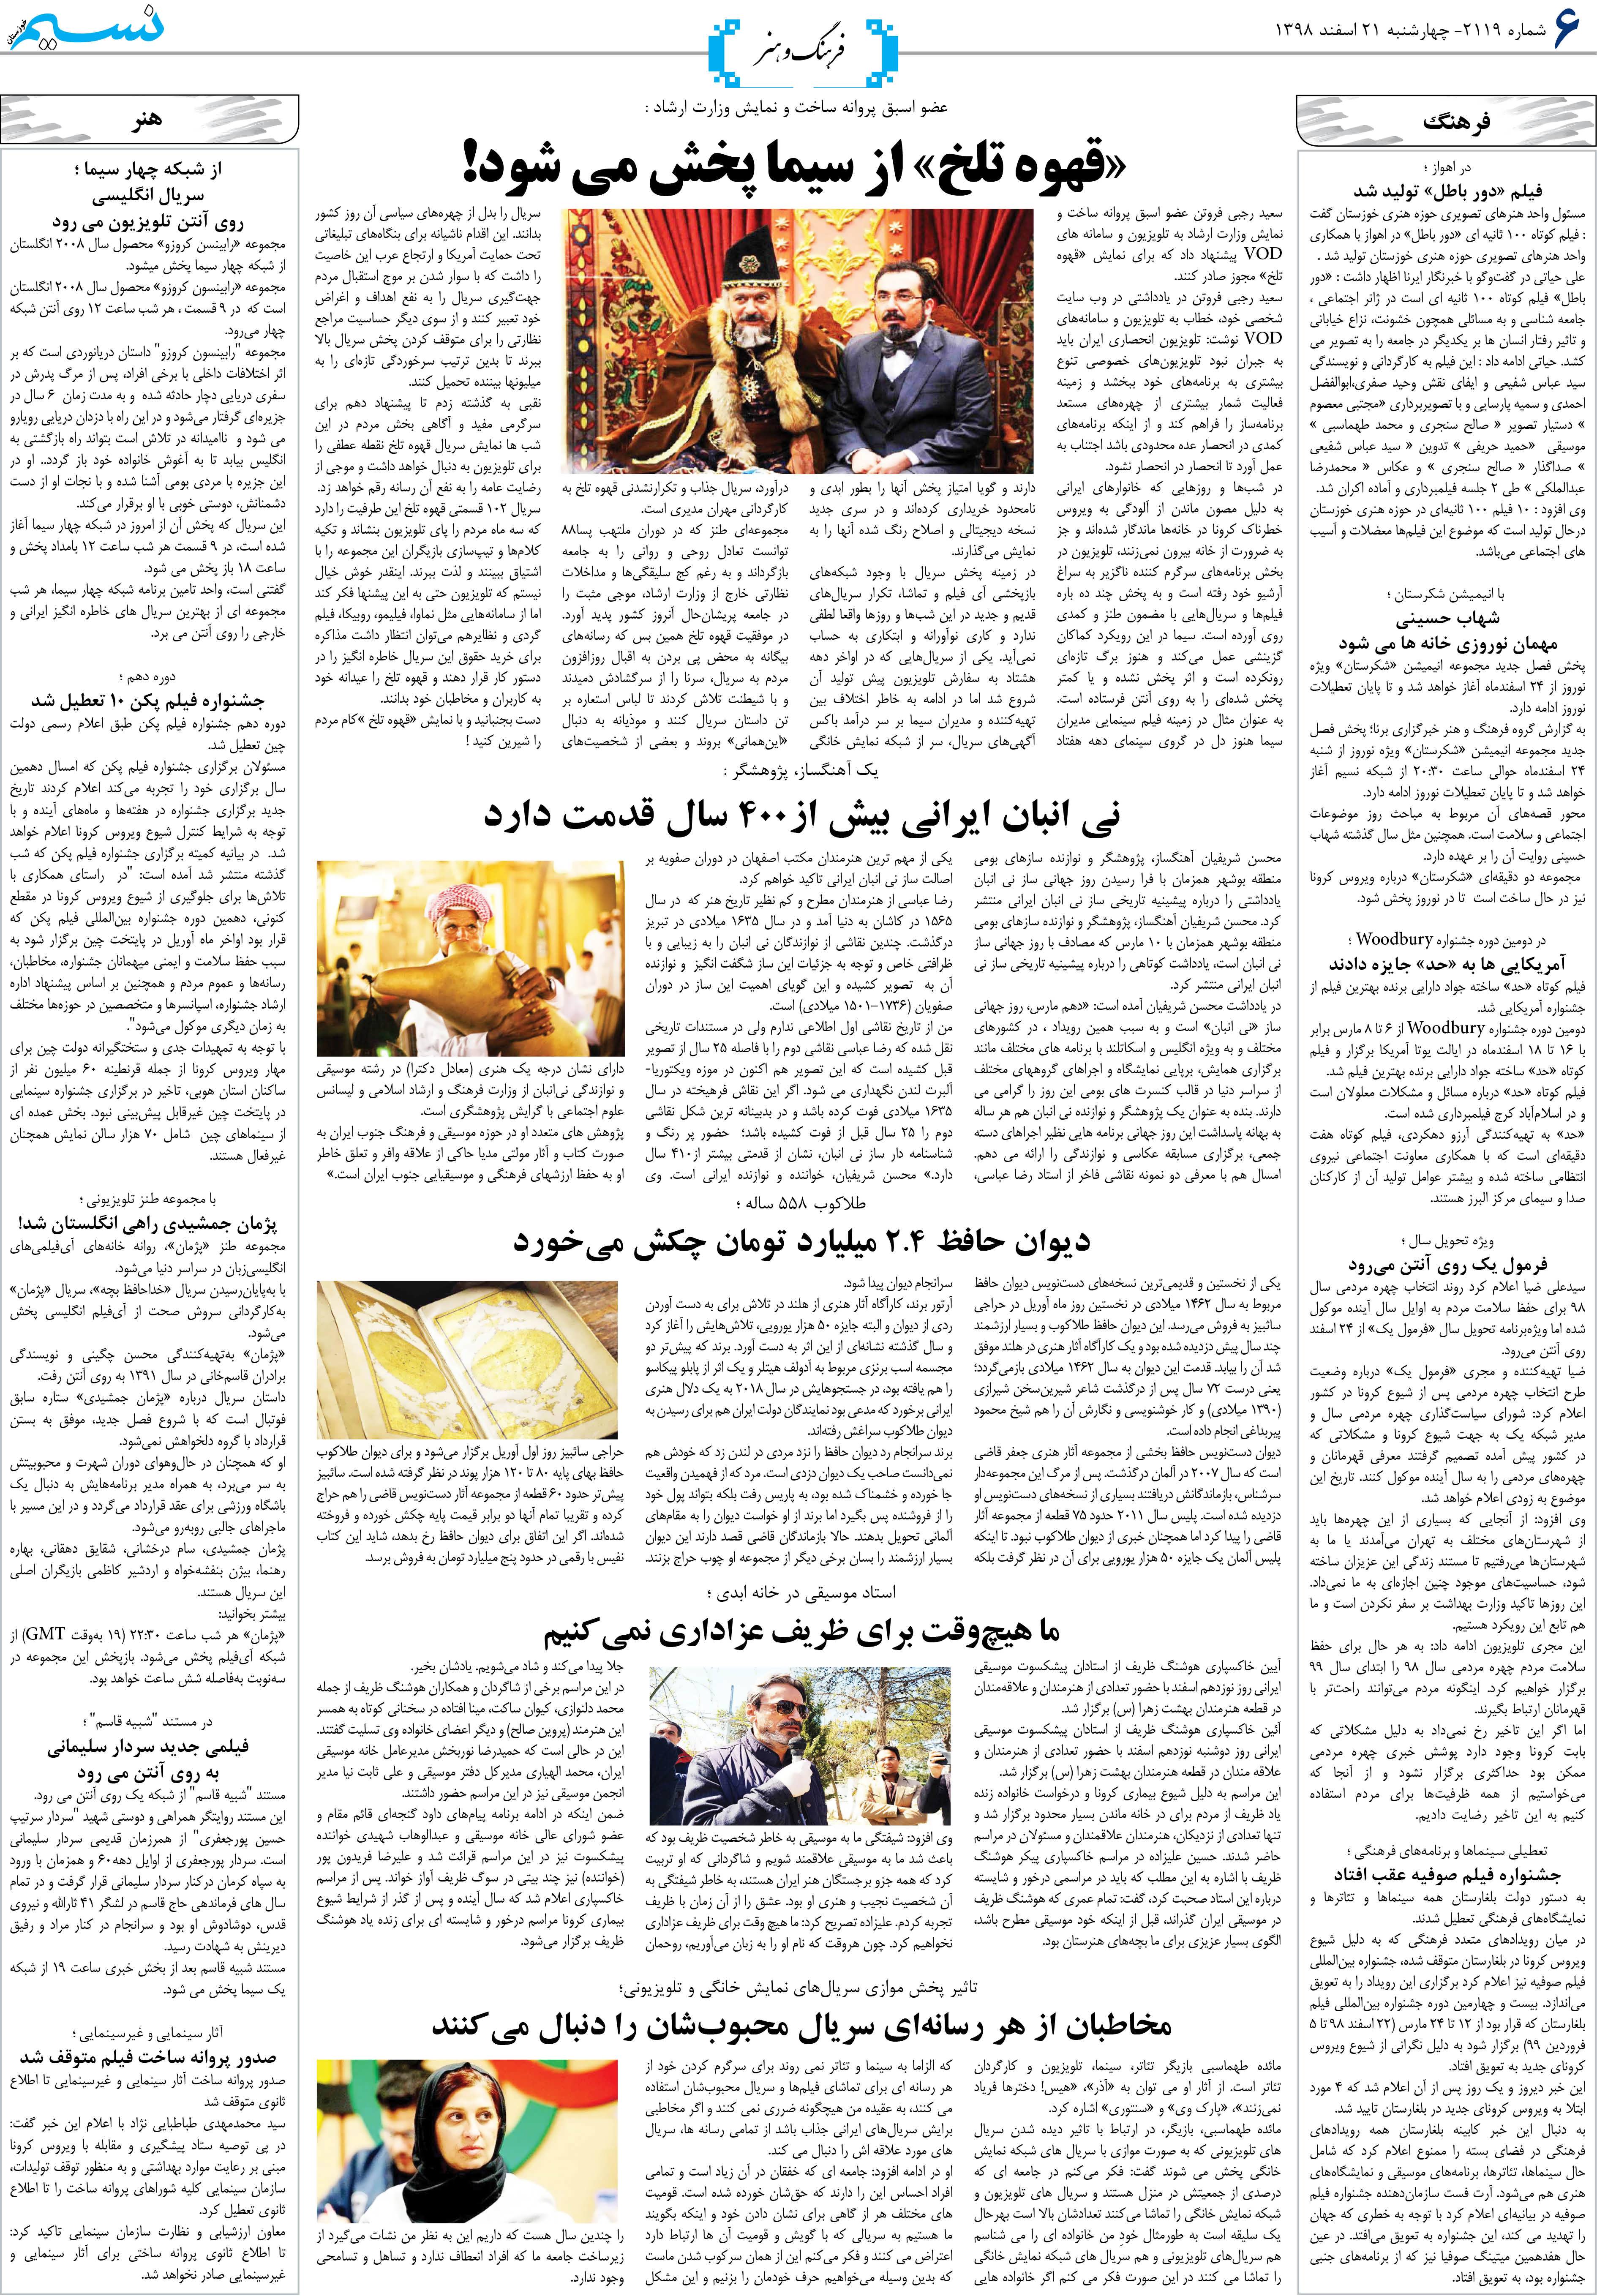 صفحه فرهنگ و هنر روزنامه نسیم شماره 2119